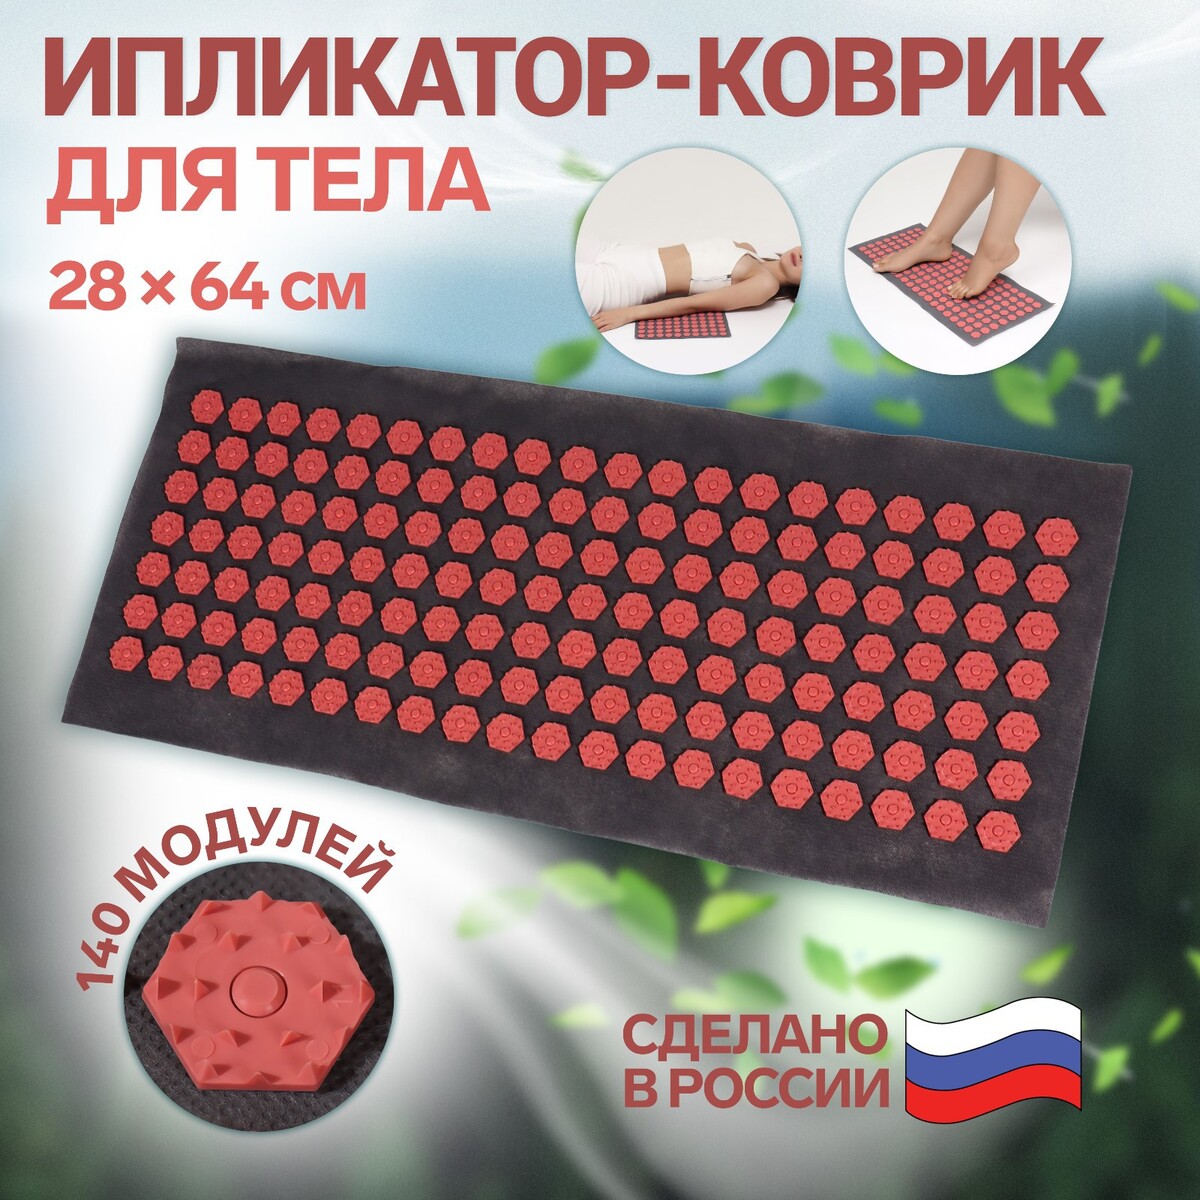 Ипликатор-коврик, основа спанбонд, 140 модулей, 28 × 64 см, цвет темно-серый/красный